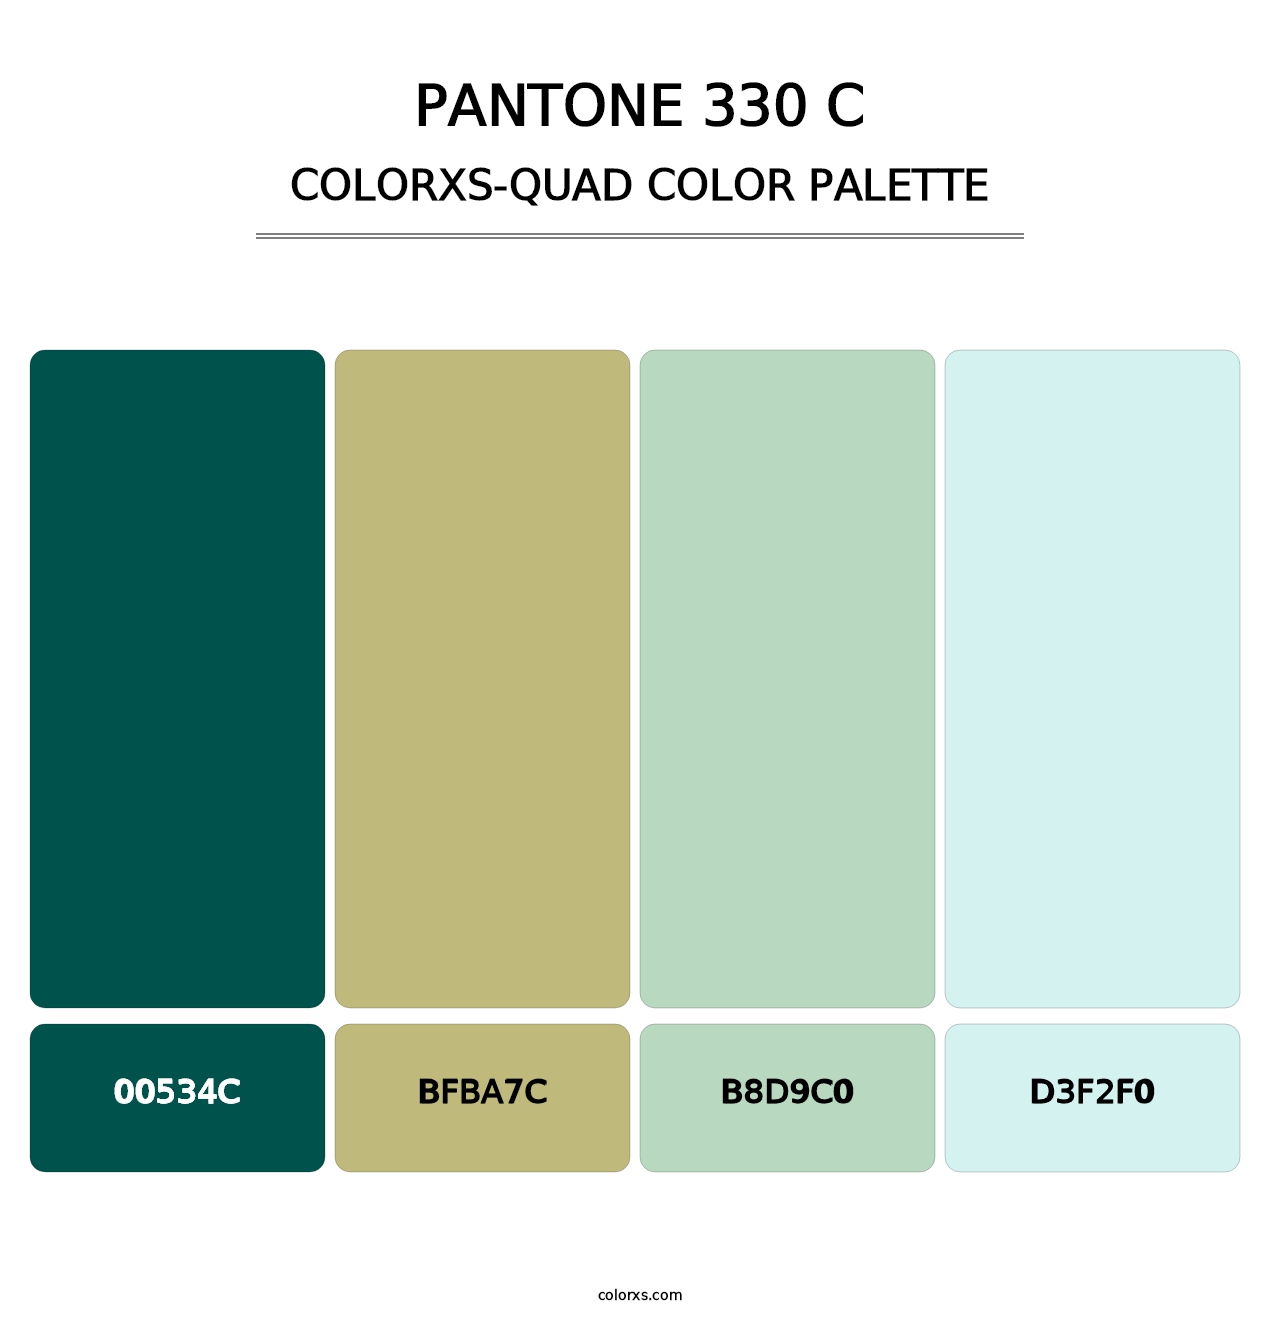 PANTONE 330 C - Colorxs Quad Palette